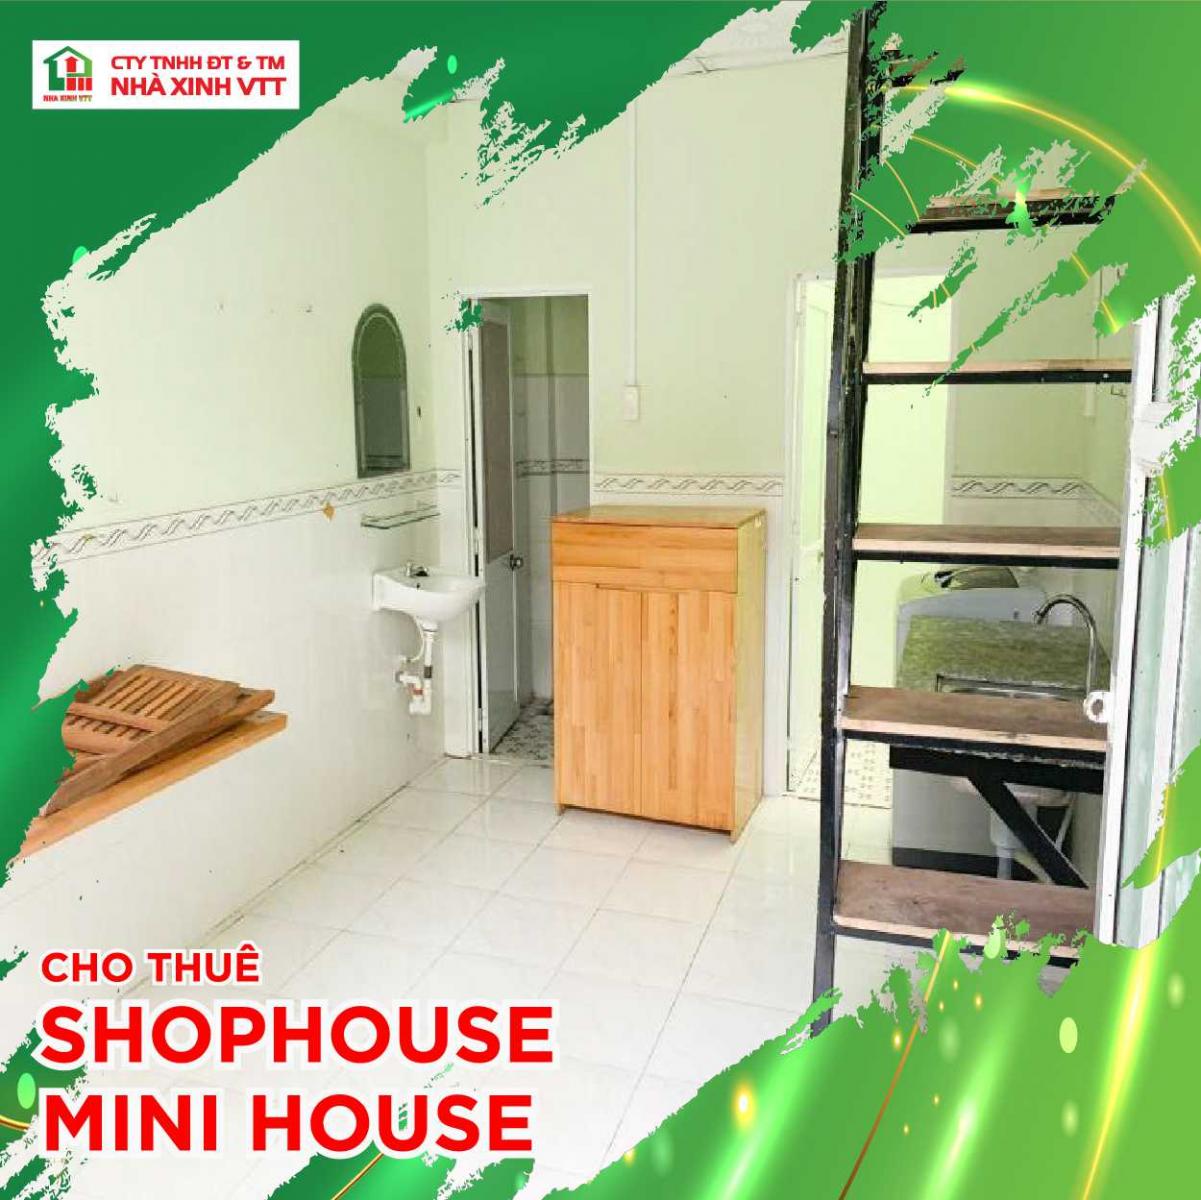 Nhà Xinh VTT hiện là đơn vị cho thuê Mini House Cần Thơ chất lượng, uy tín bậc nhất thị trường